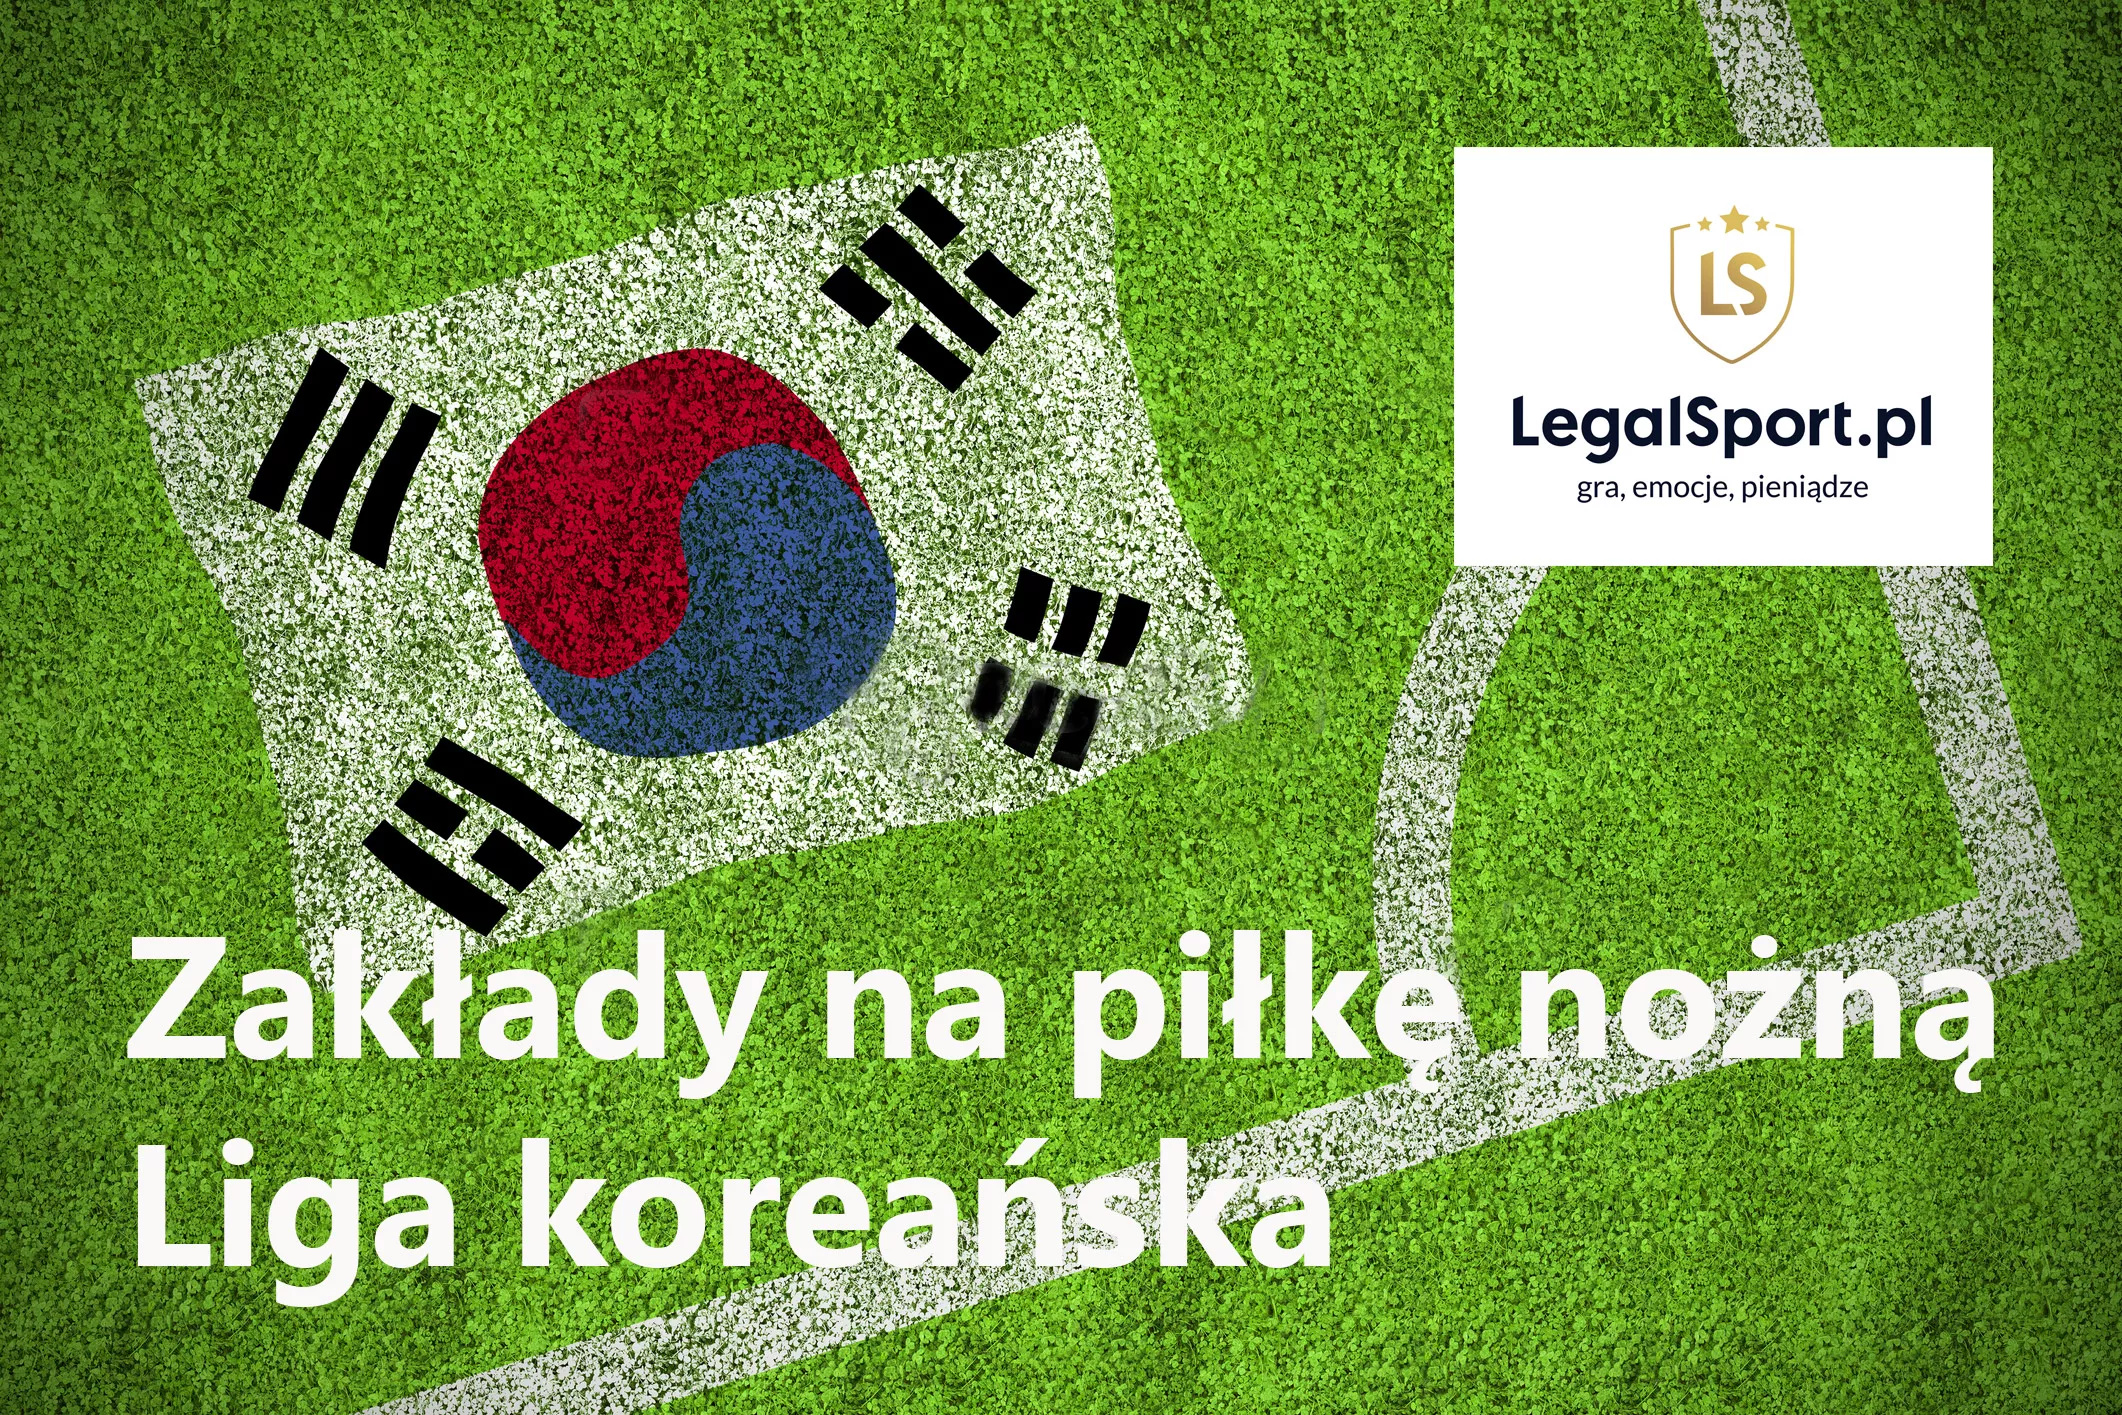 Liga koreańska - zakłady internetowe